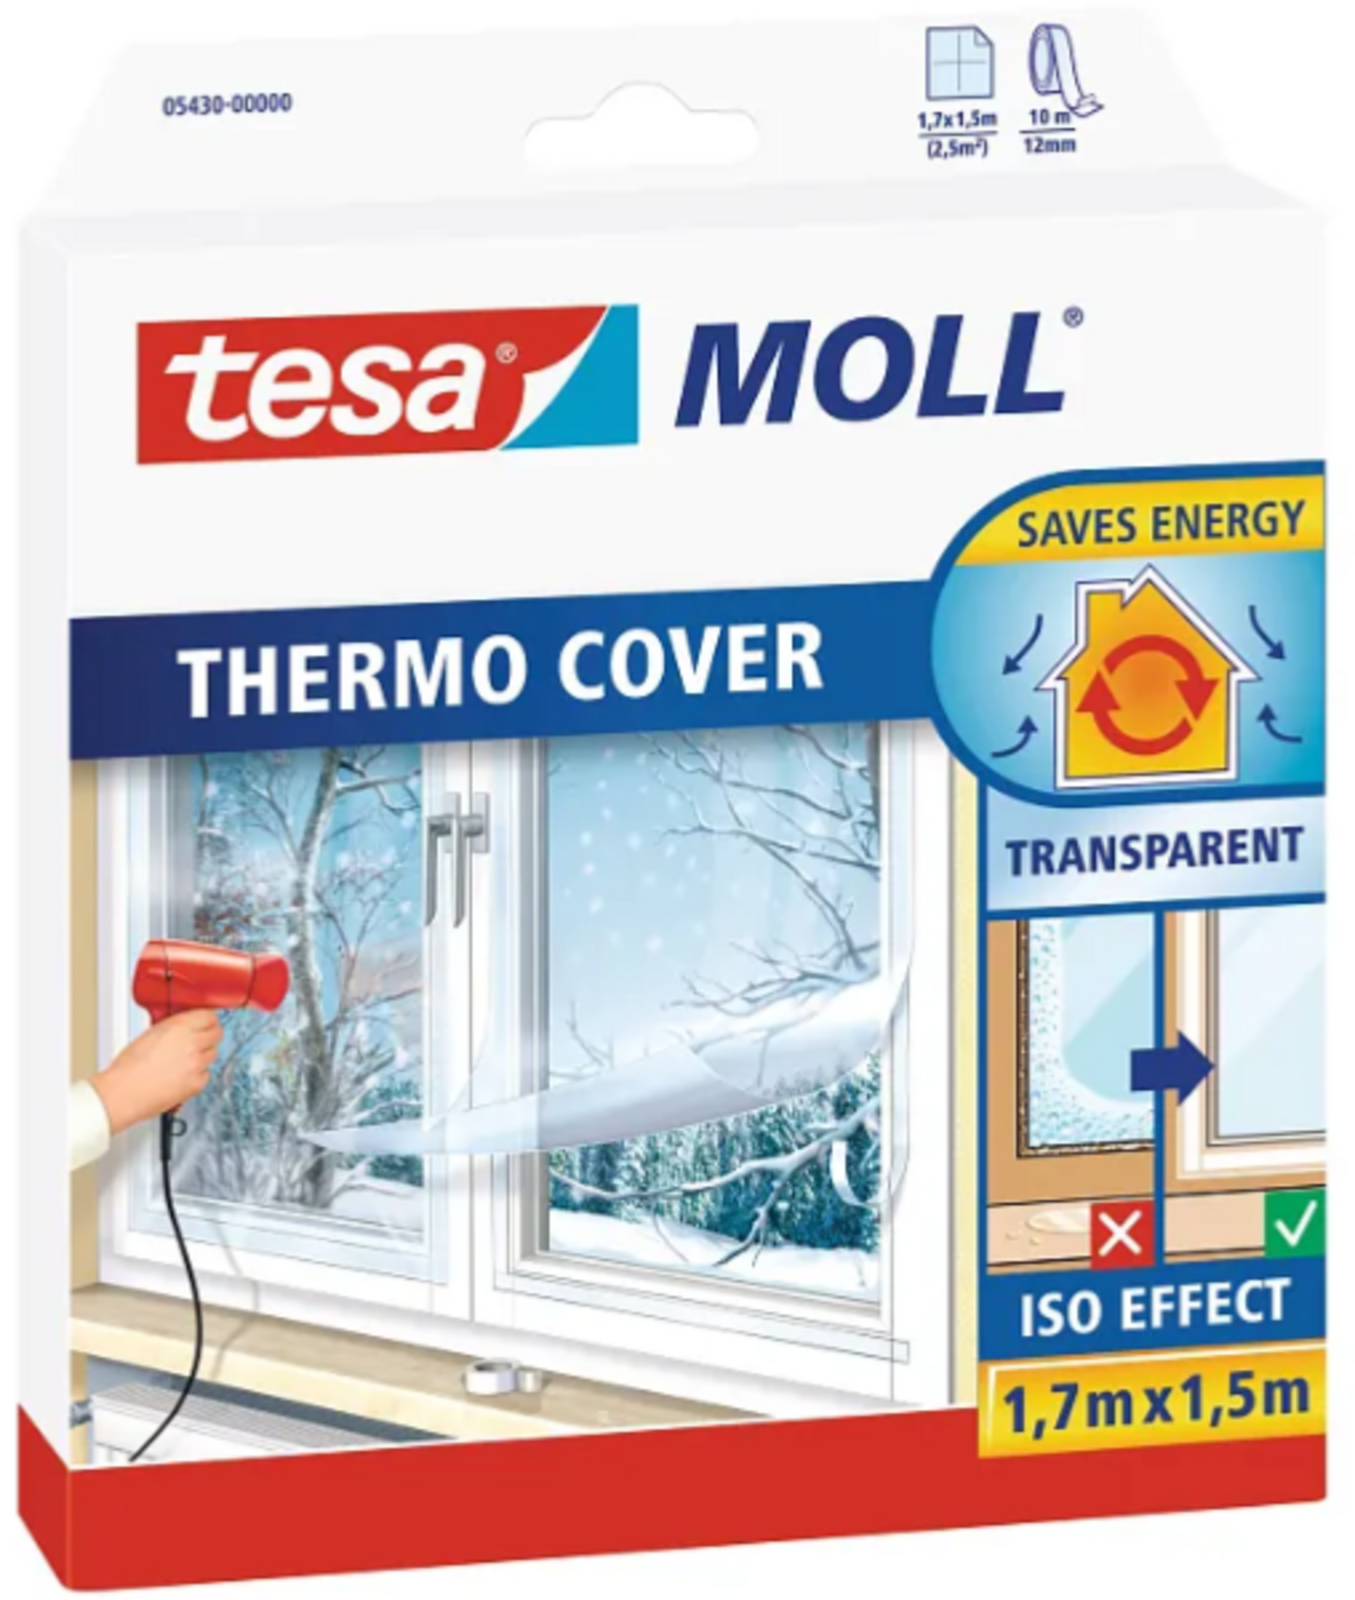 Tesa Tesamoll samolepiaca termofólia do okna Thermo Cover  - veľkosť: 1,7 m x 1,5 m, farba: číra